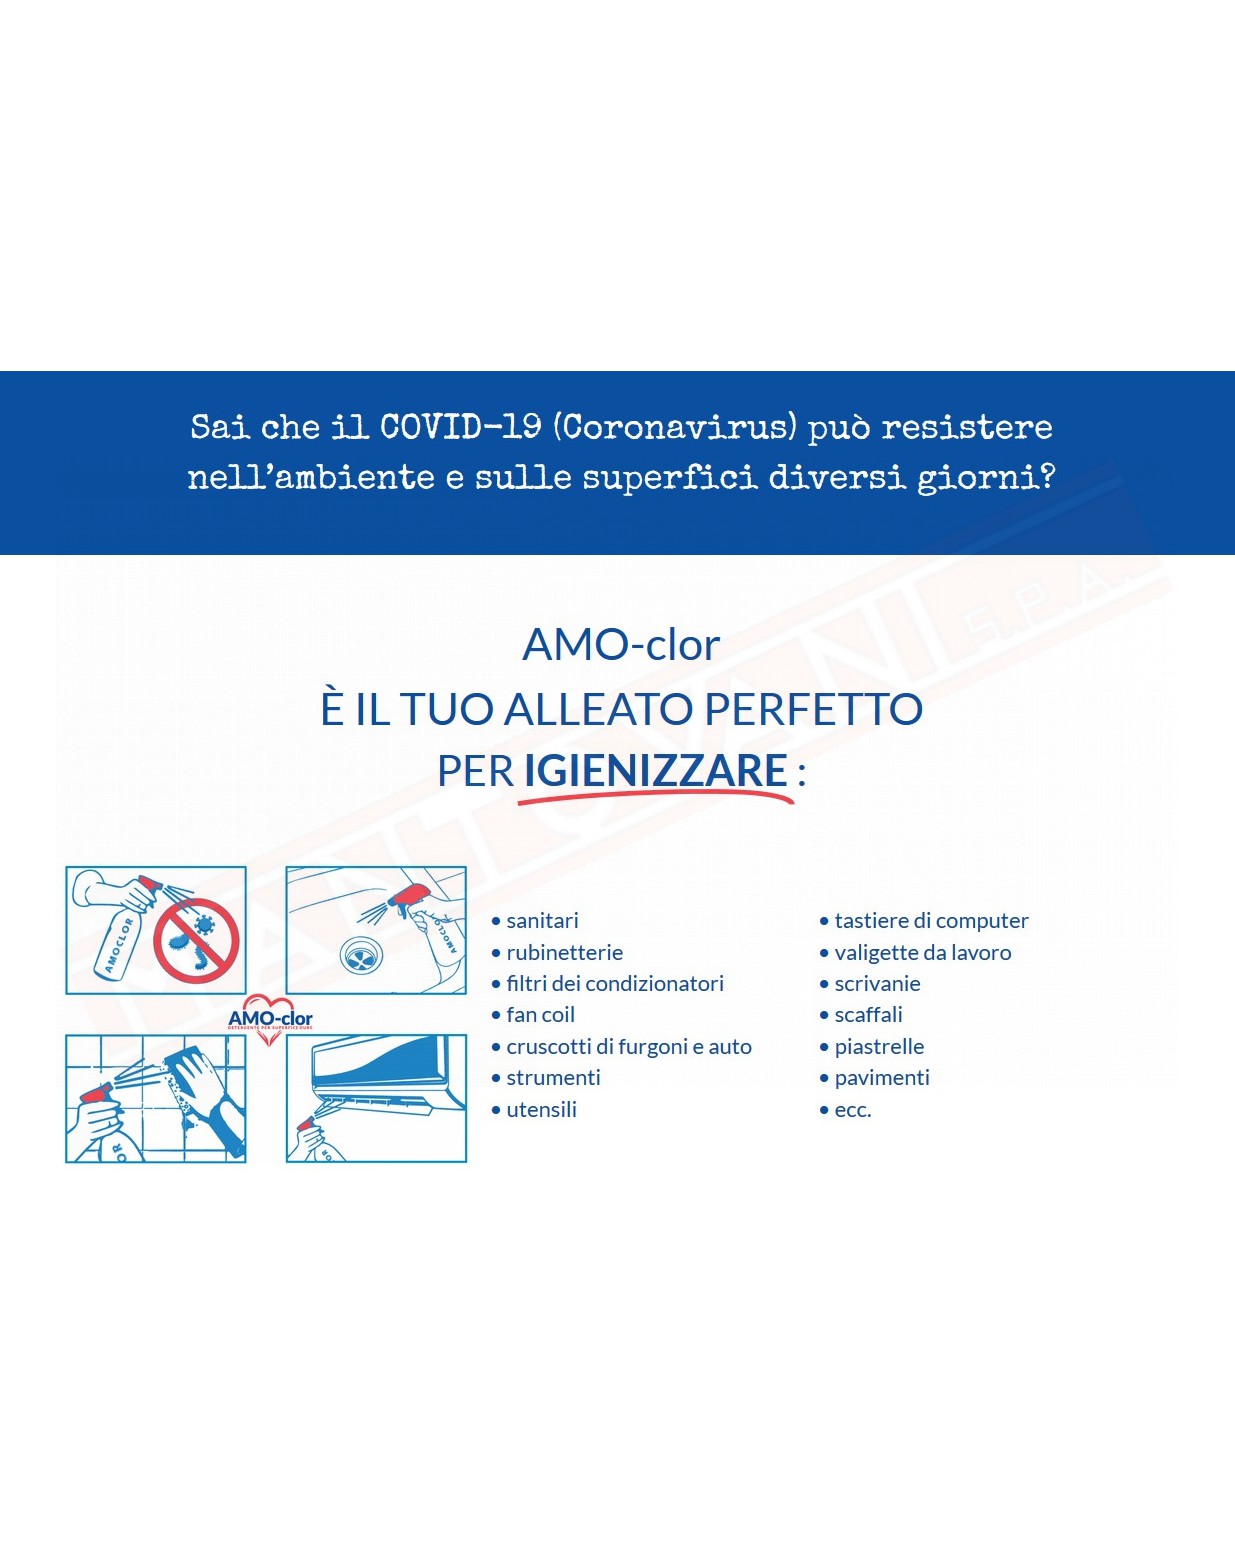 AMO-CLOR 1L Disinfettante igenizzante per superfici e condizionatori